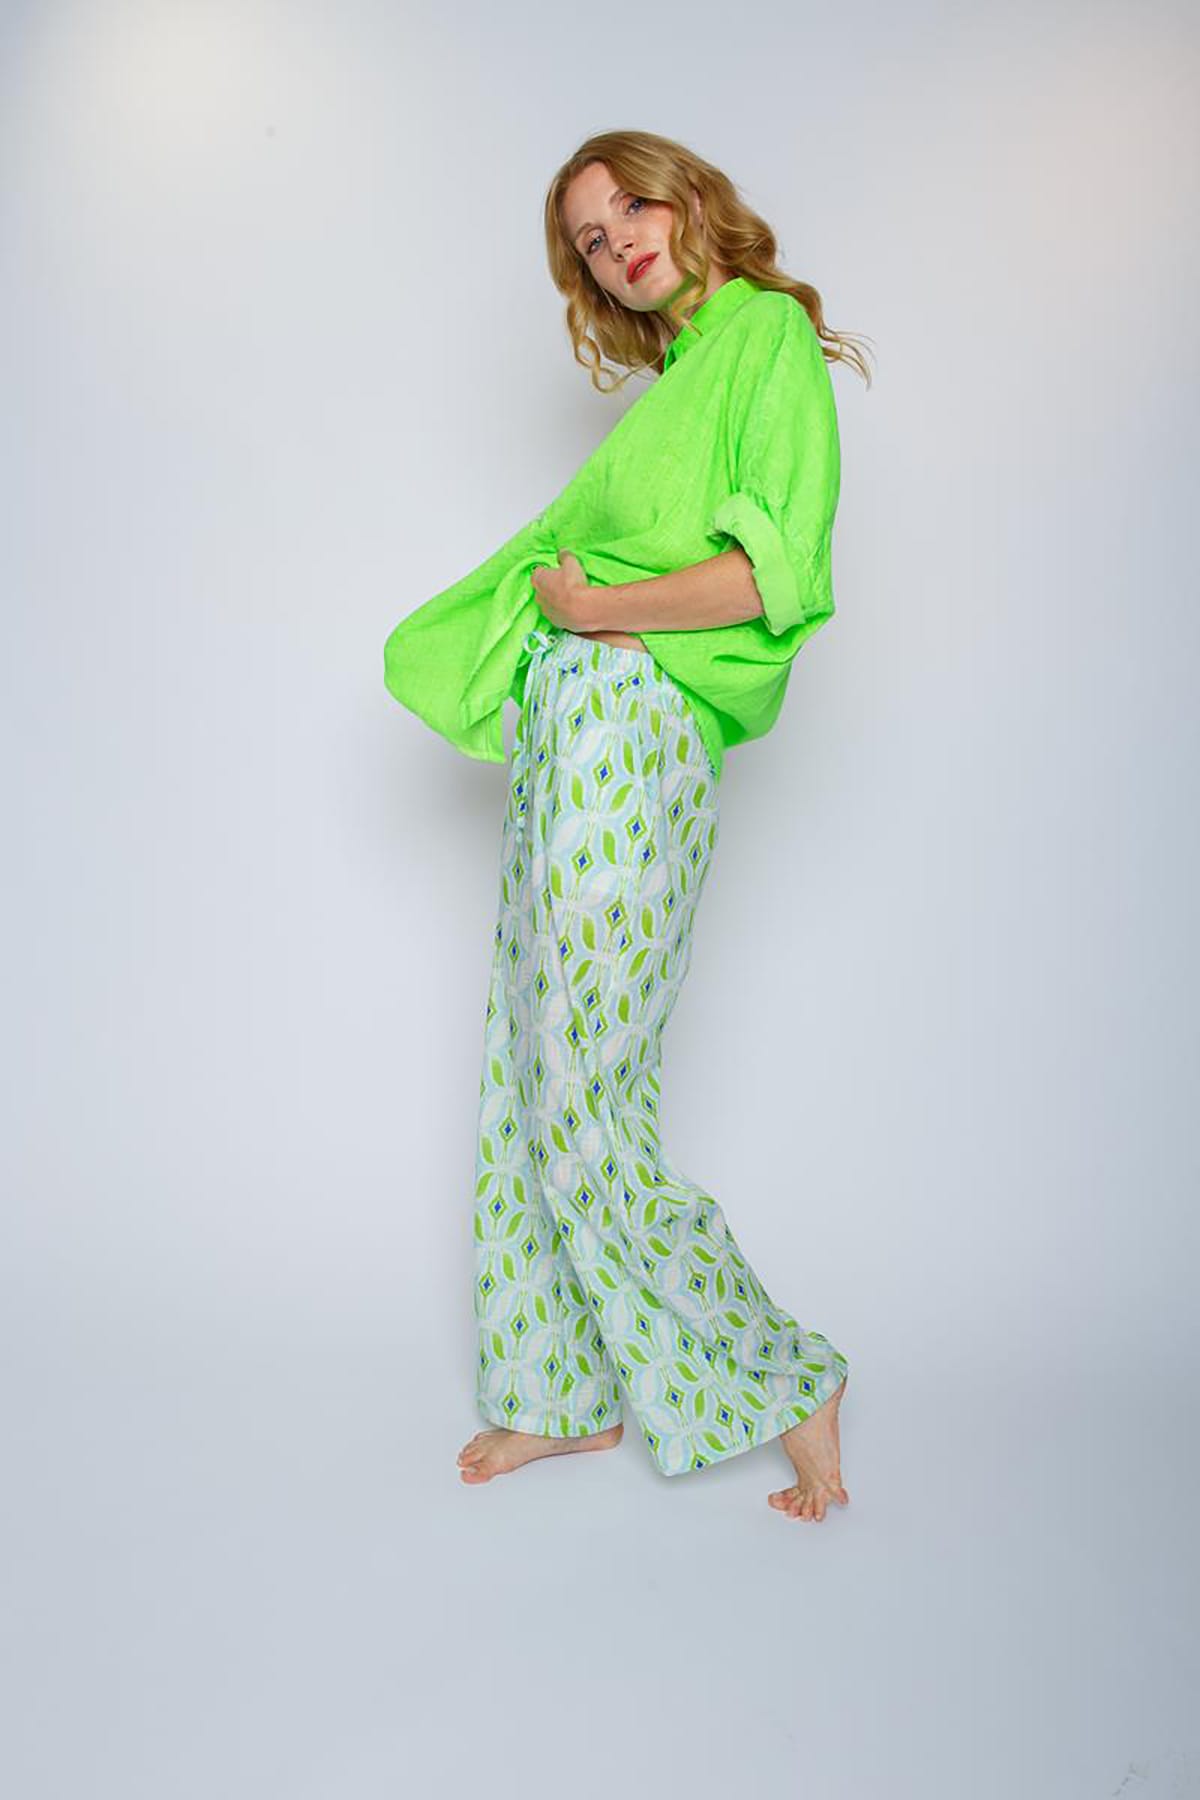 Leichte Sommerhose mit elastischem Bund aqua green Hose Emily van den Bergh 